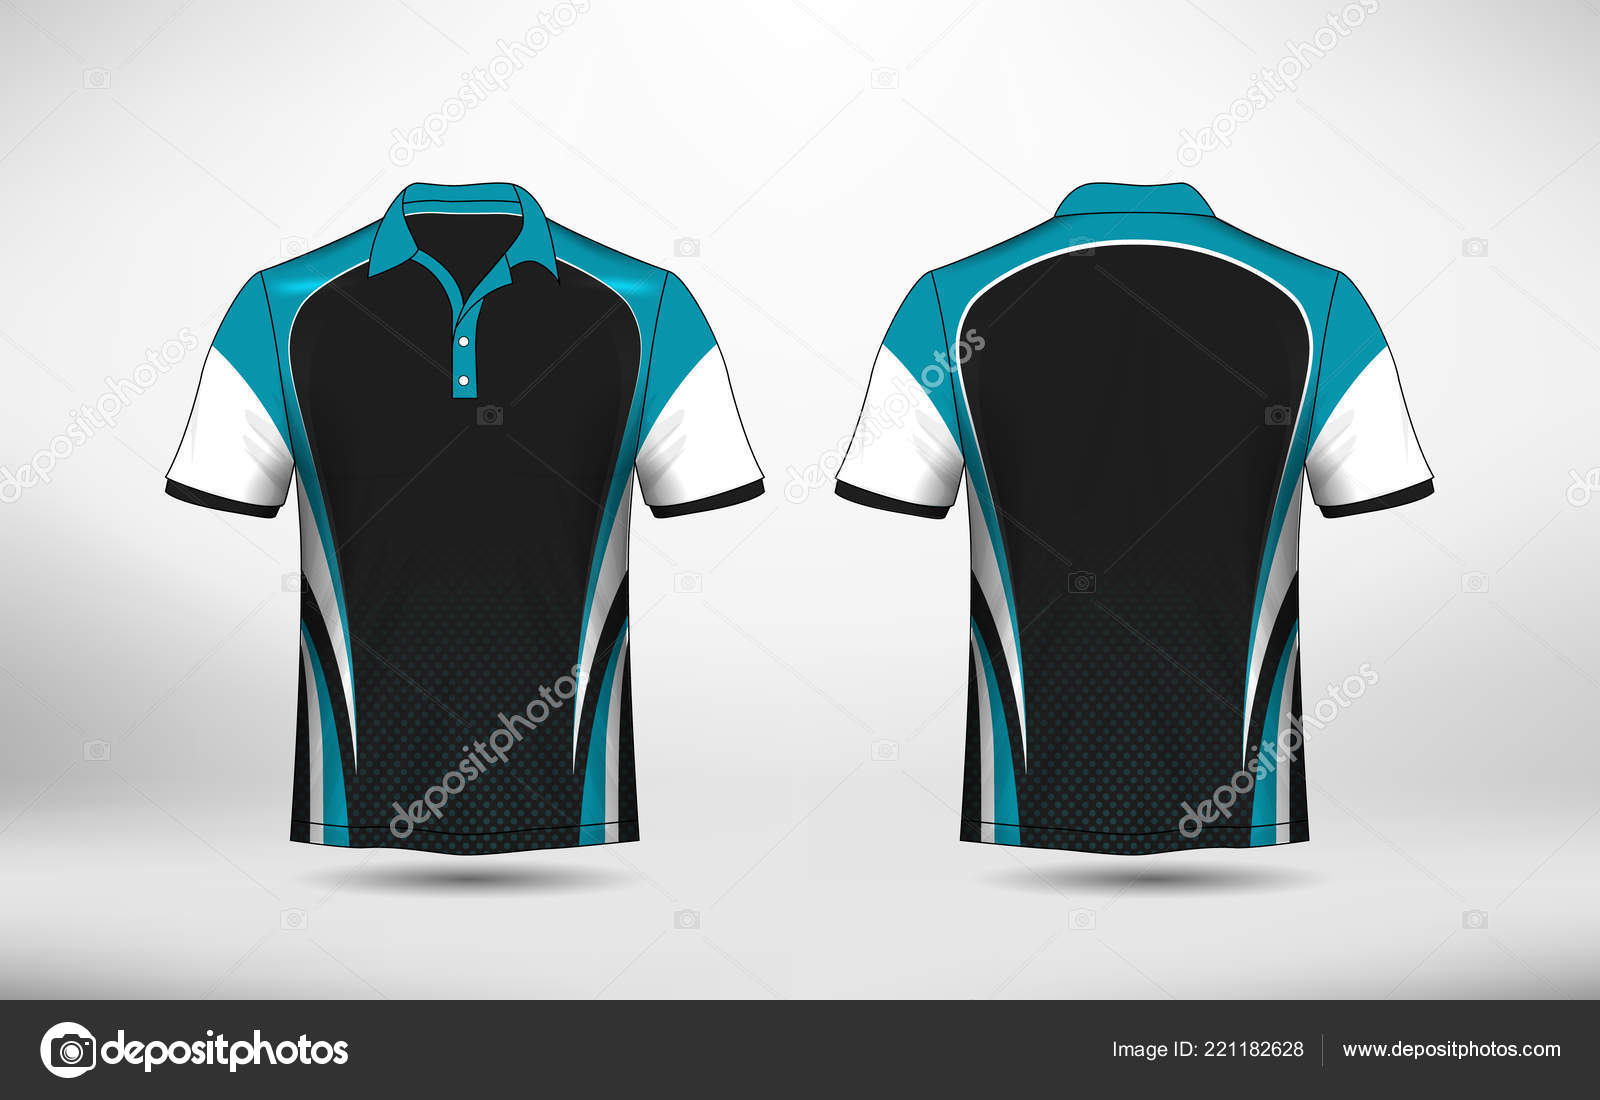 blue black jersey design